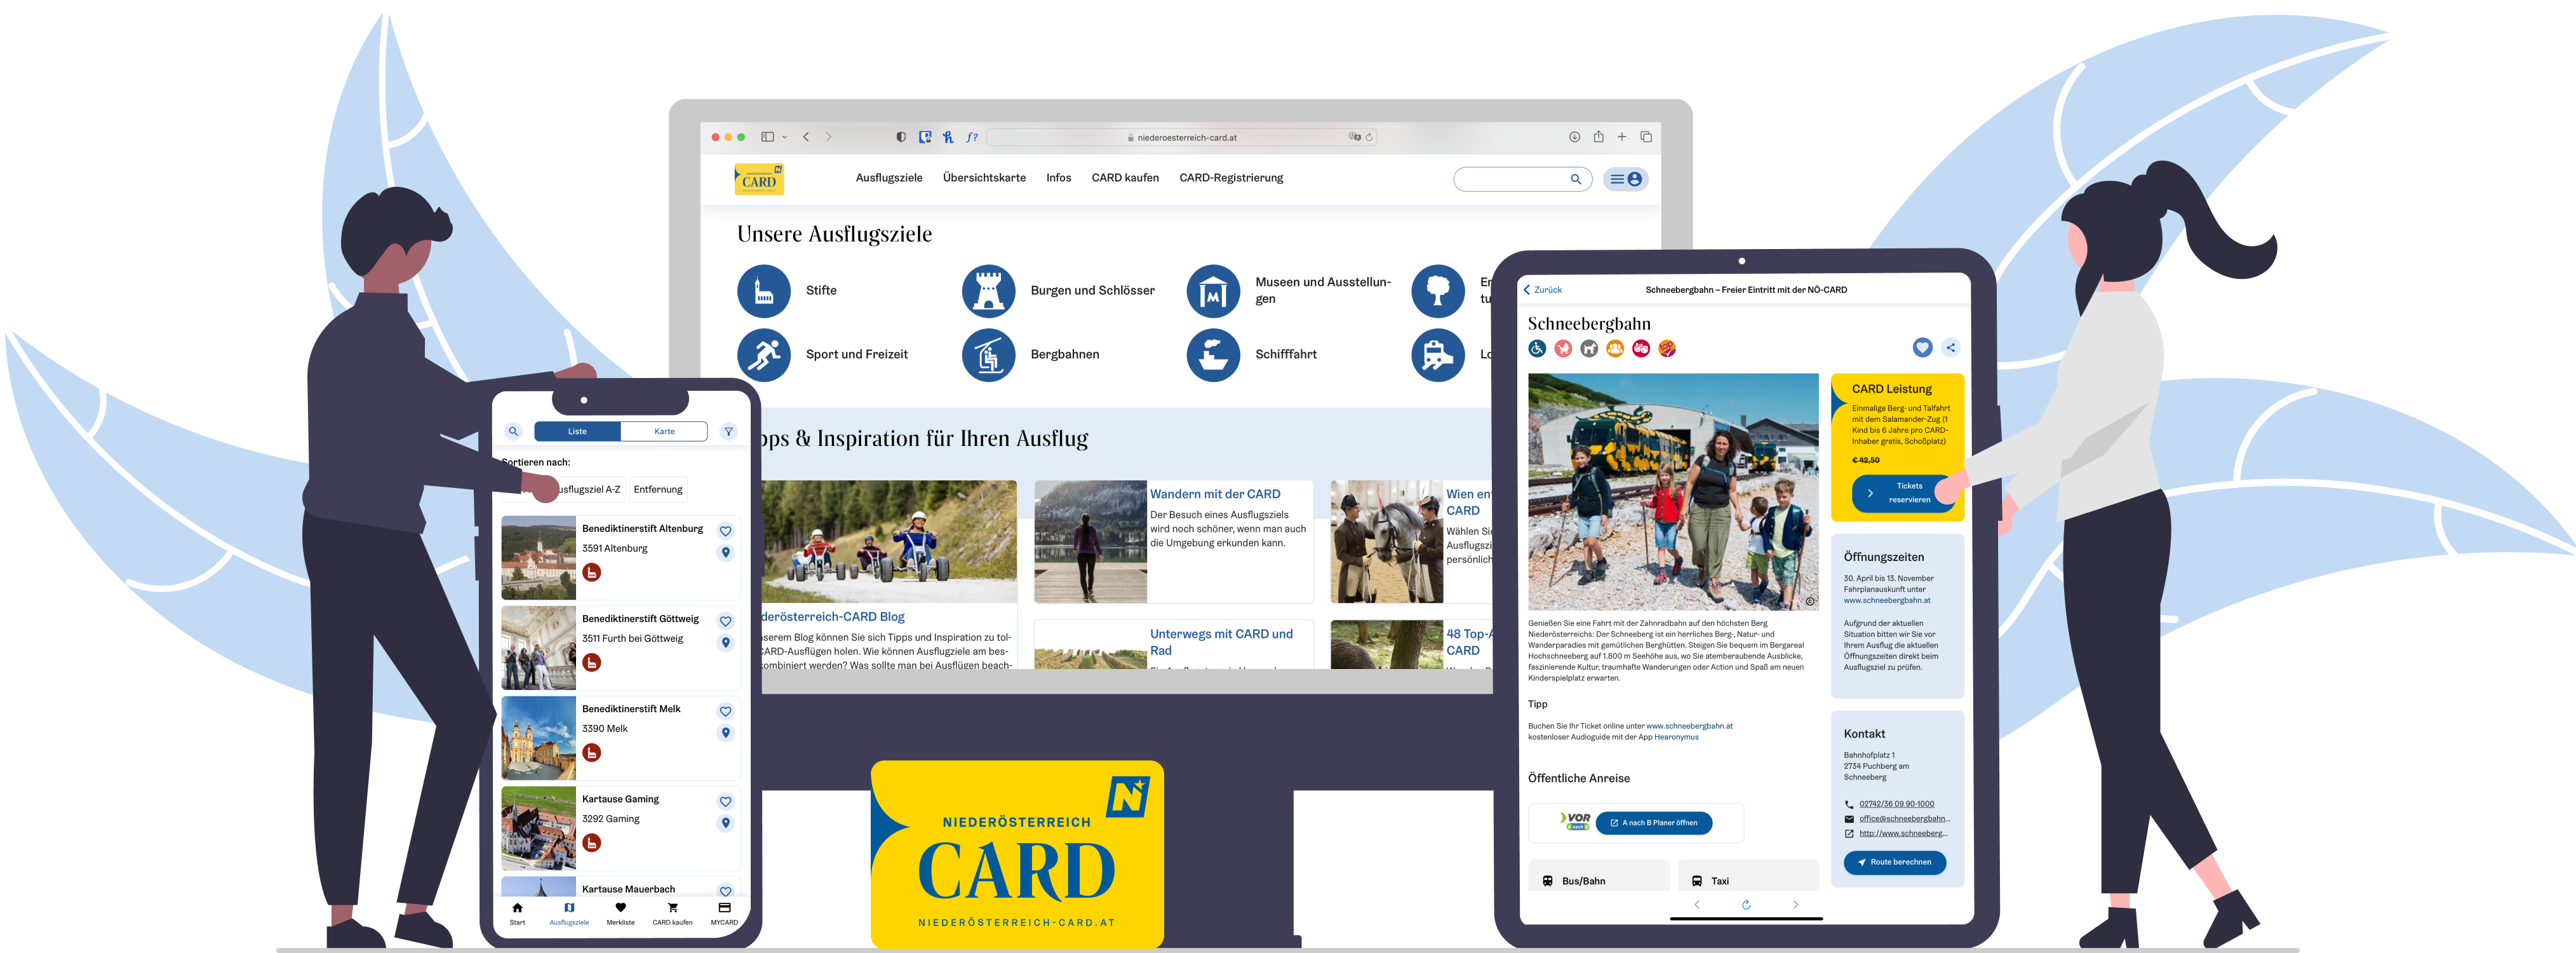 Promo Image Desktop Size für Niederösterreich-CARD Tourismus App und Website | bitsfabrik